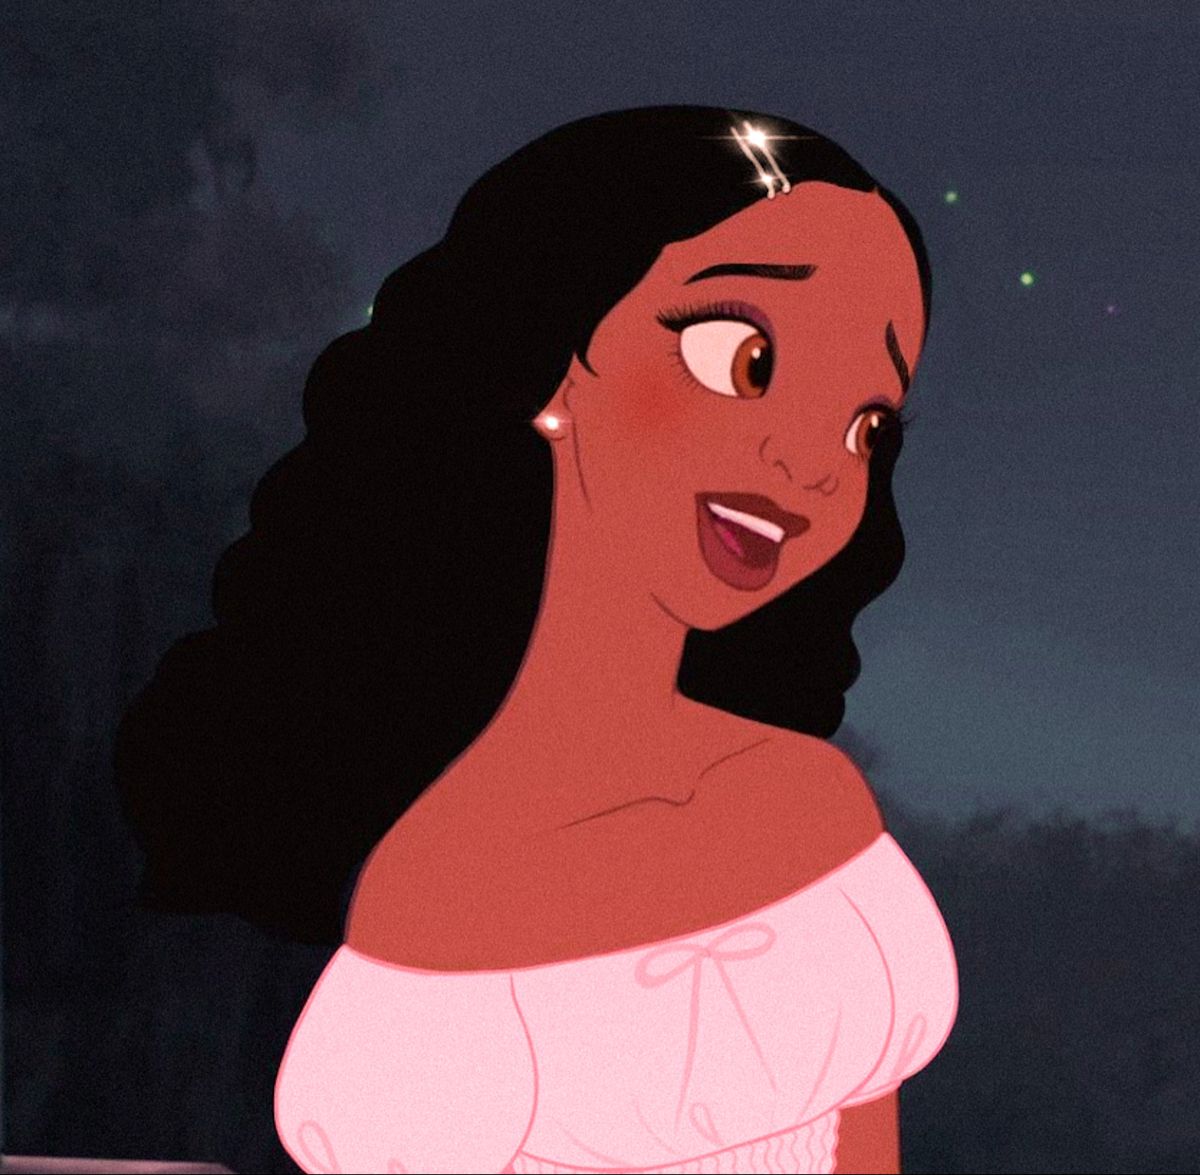 Fondos. Disney princess art, Black girl cartoon, Black girl magic art